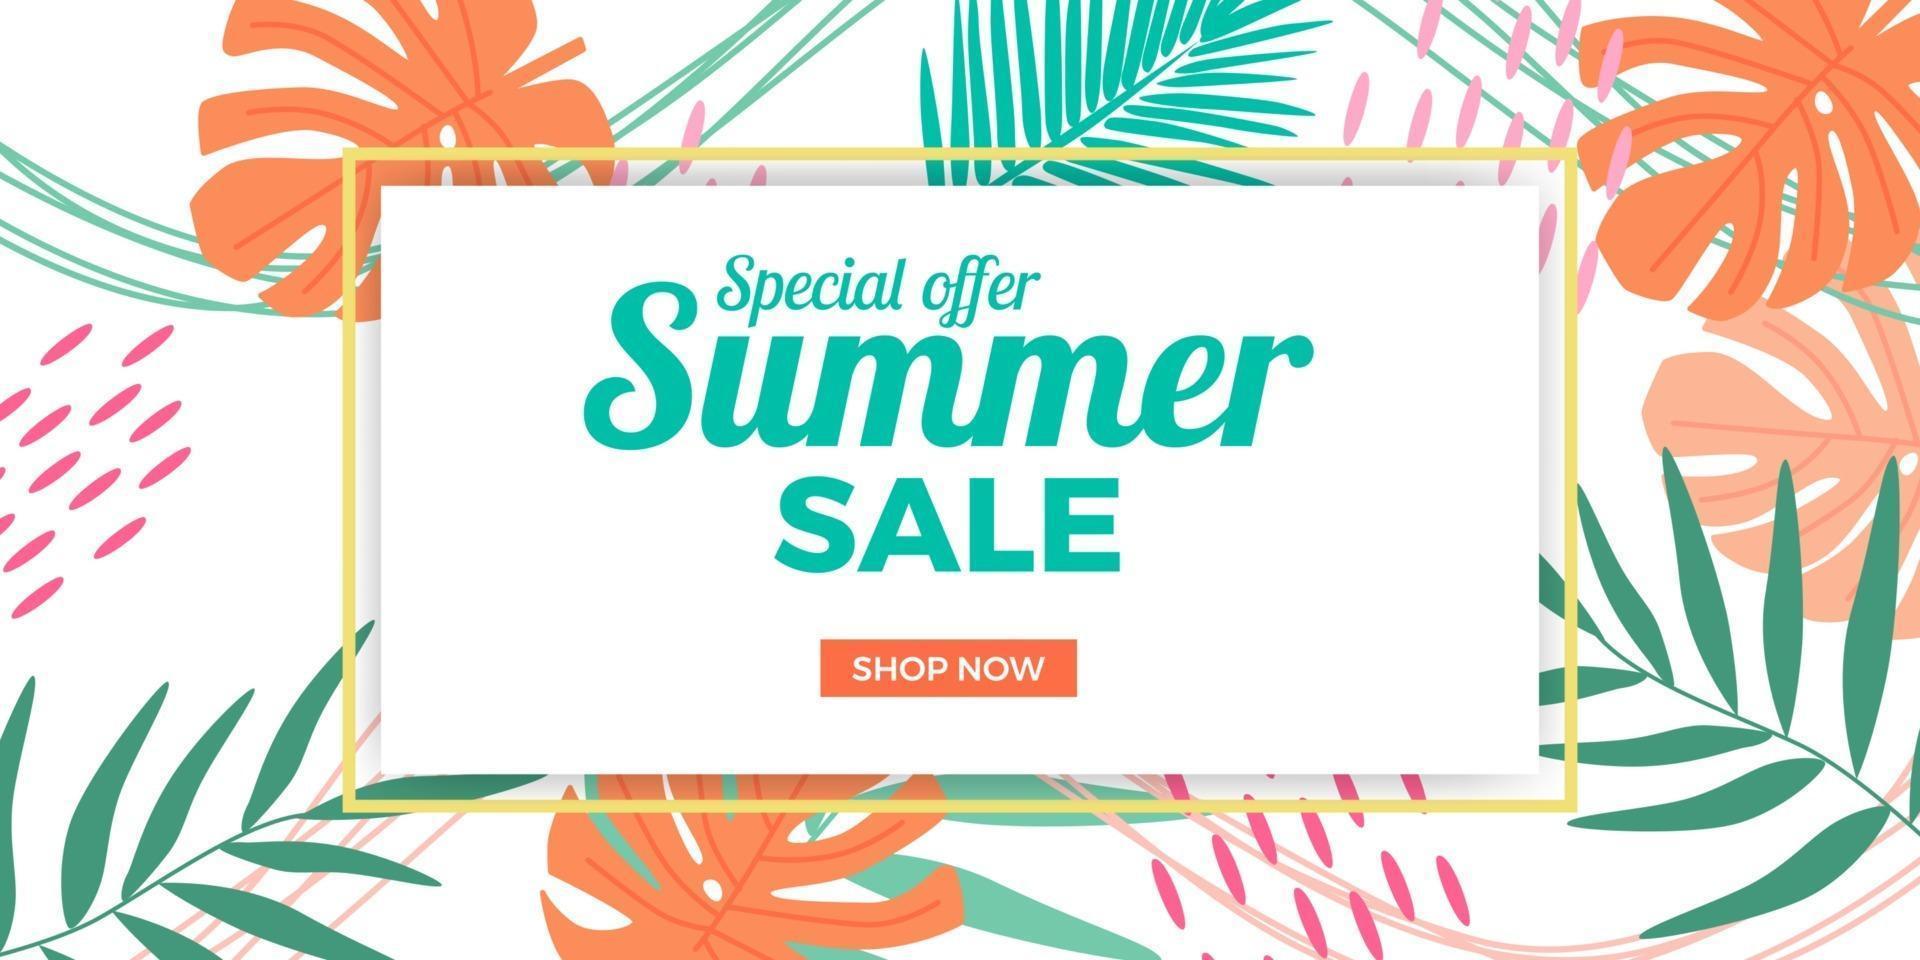 promozione di banner di offerta di vendita estiva con foglie tropicali di memphis astratte con sfondo bianco vettore